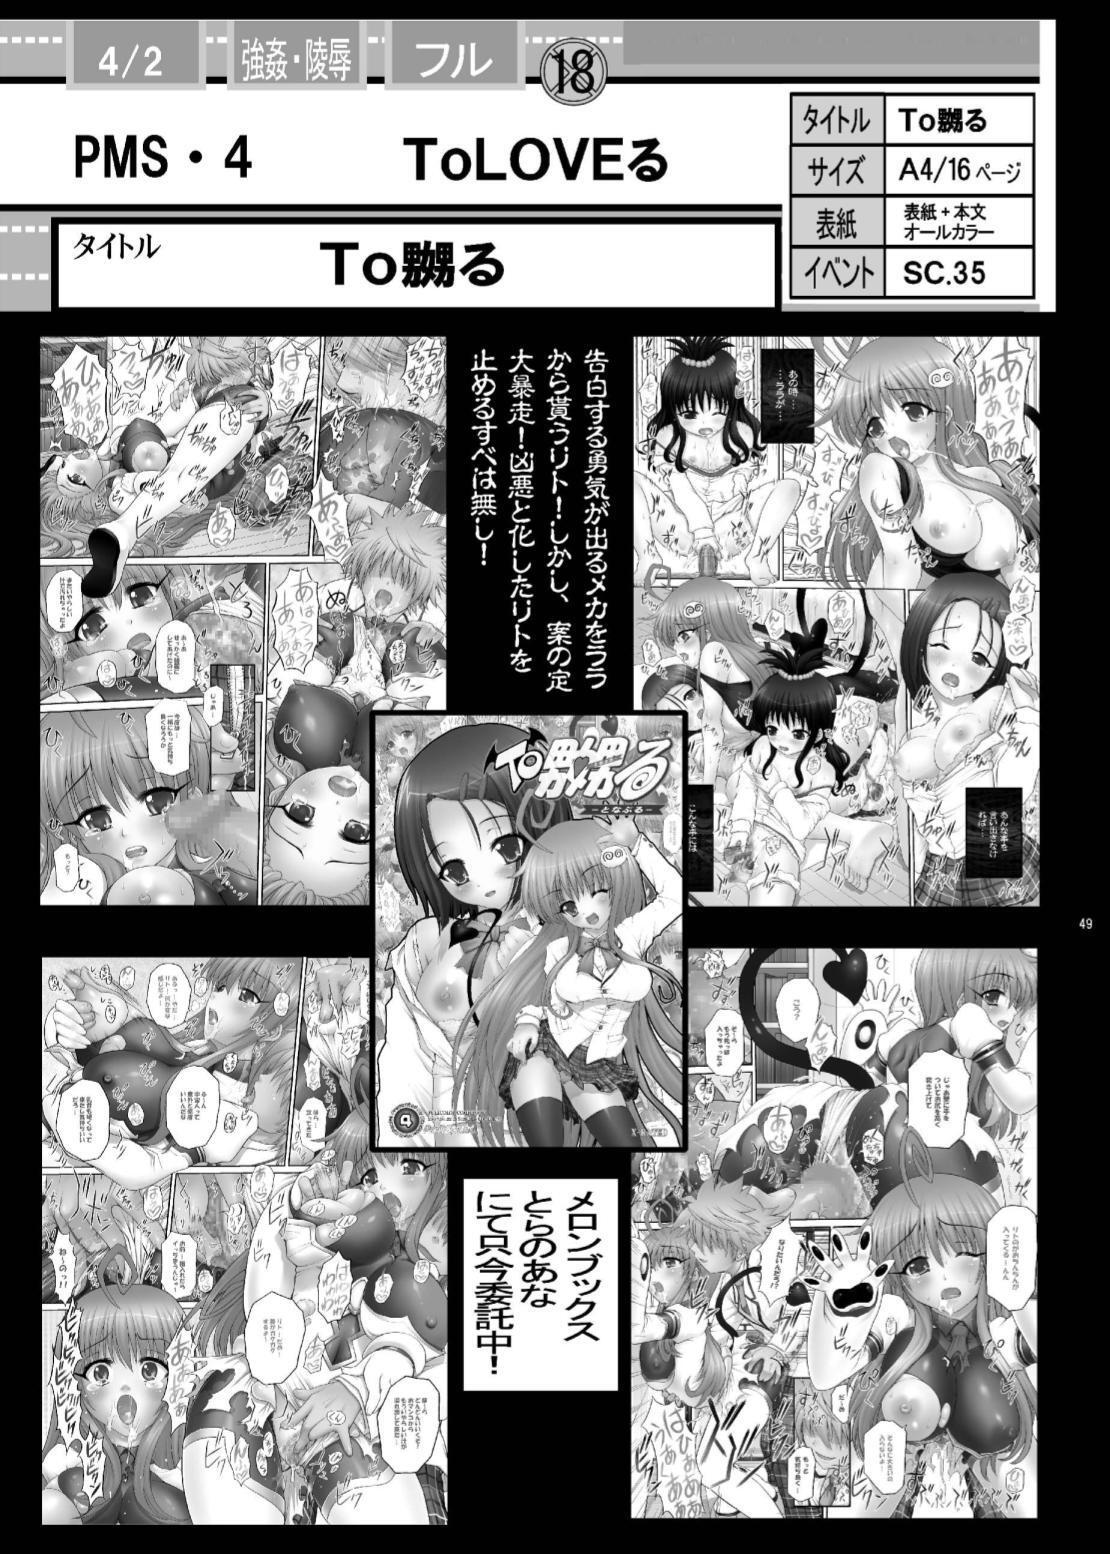 PM 12 Niku Shuujin one piece 45 hentai manga